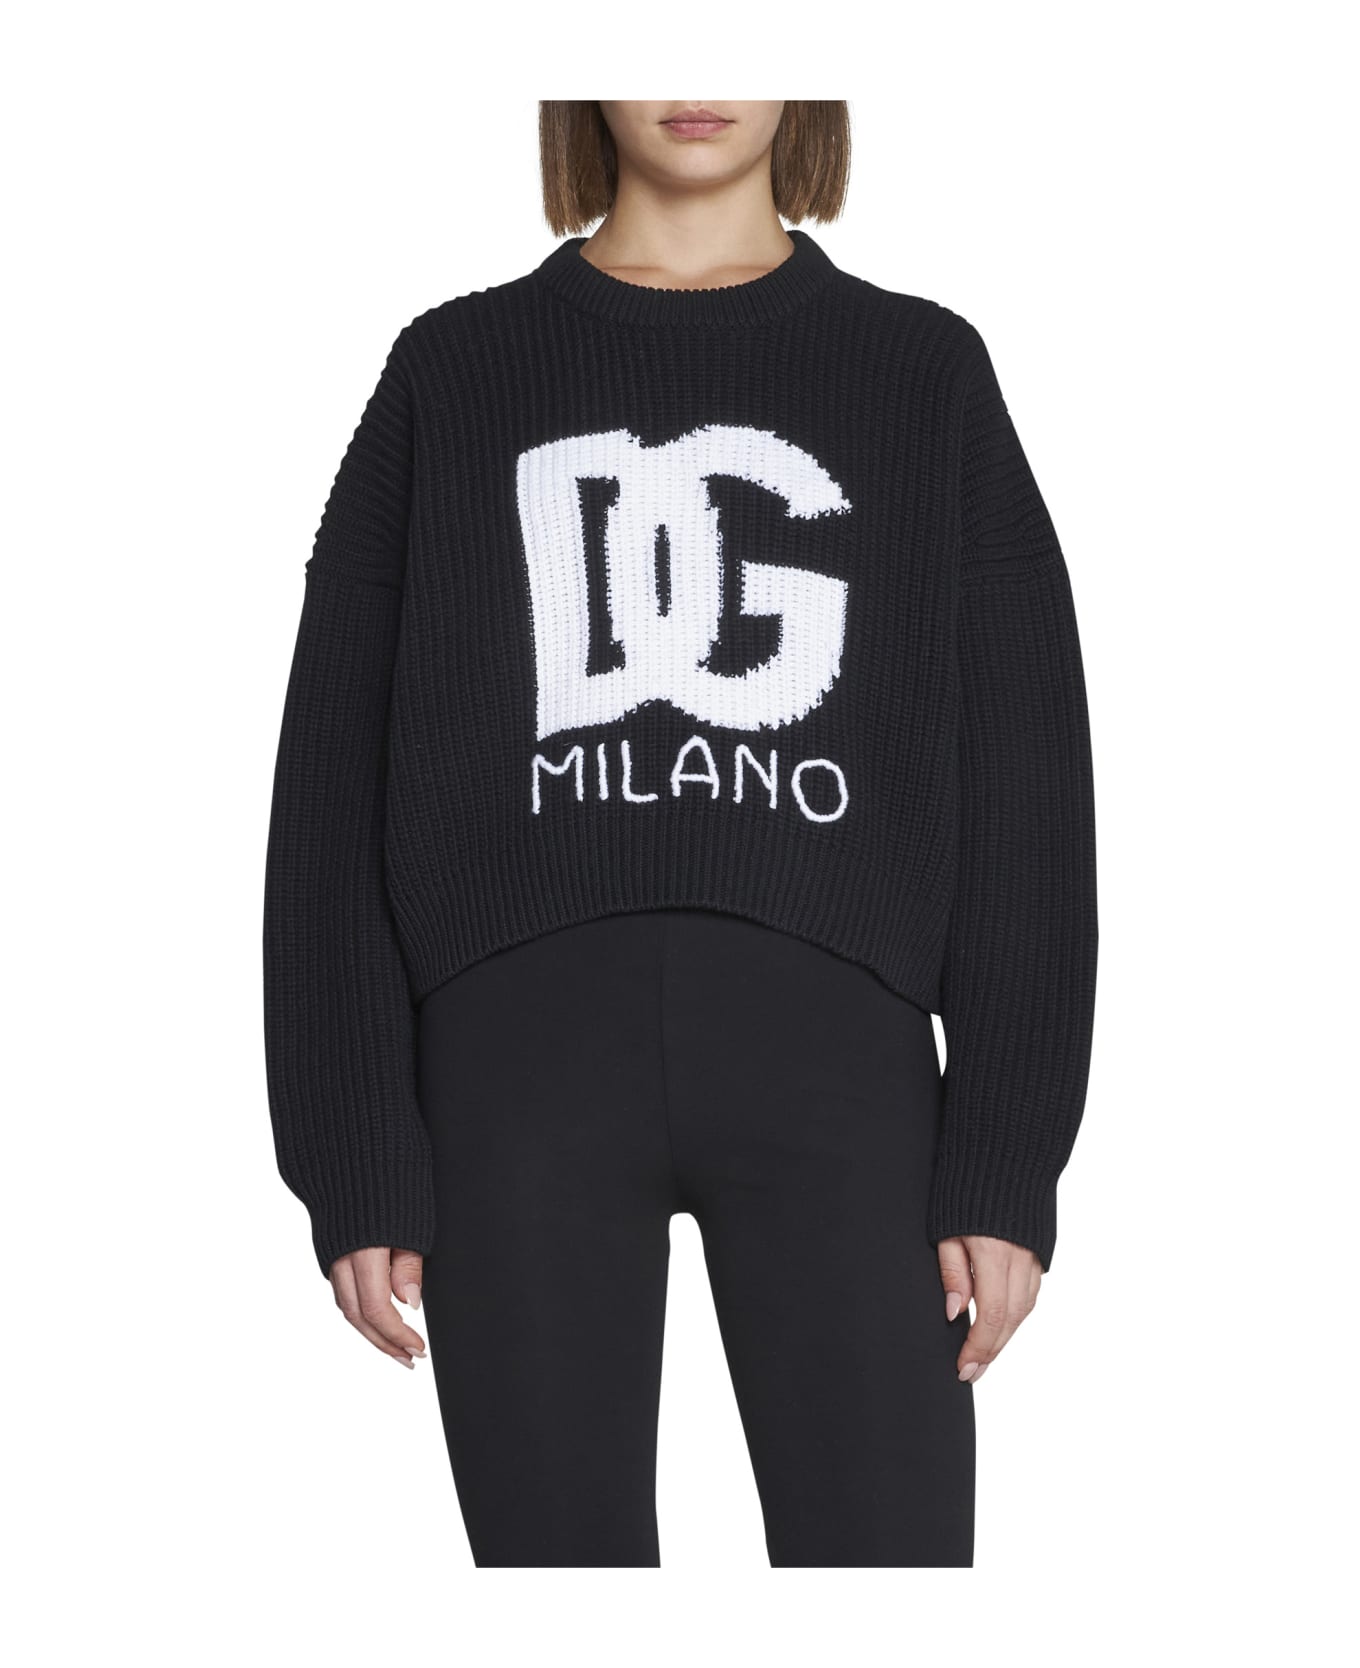 Dolce & Gabbana Sweater - Variante abbinata